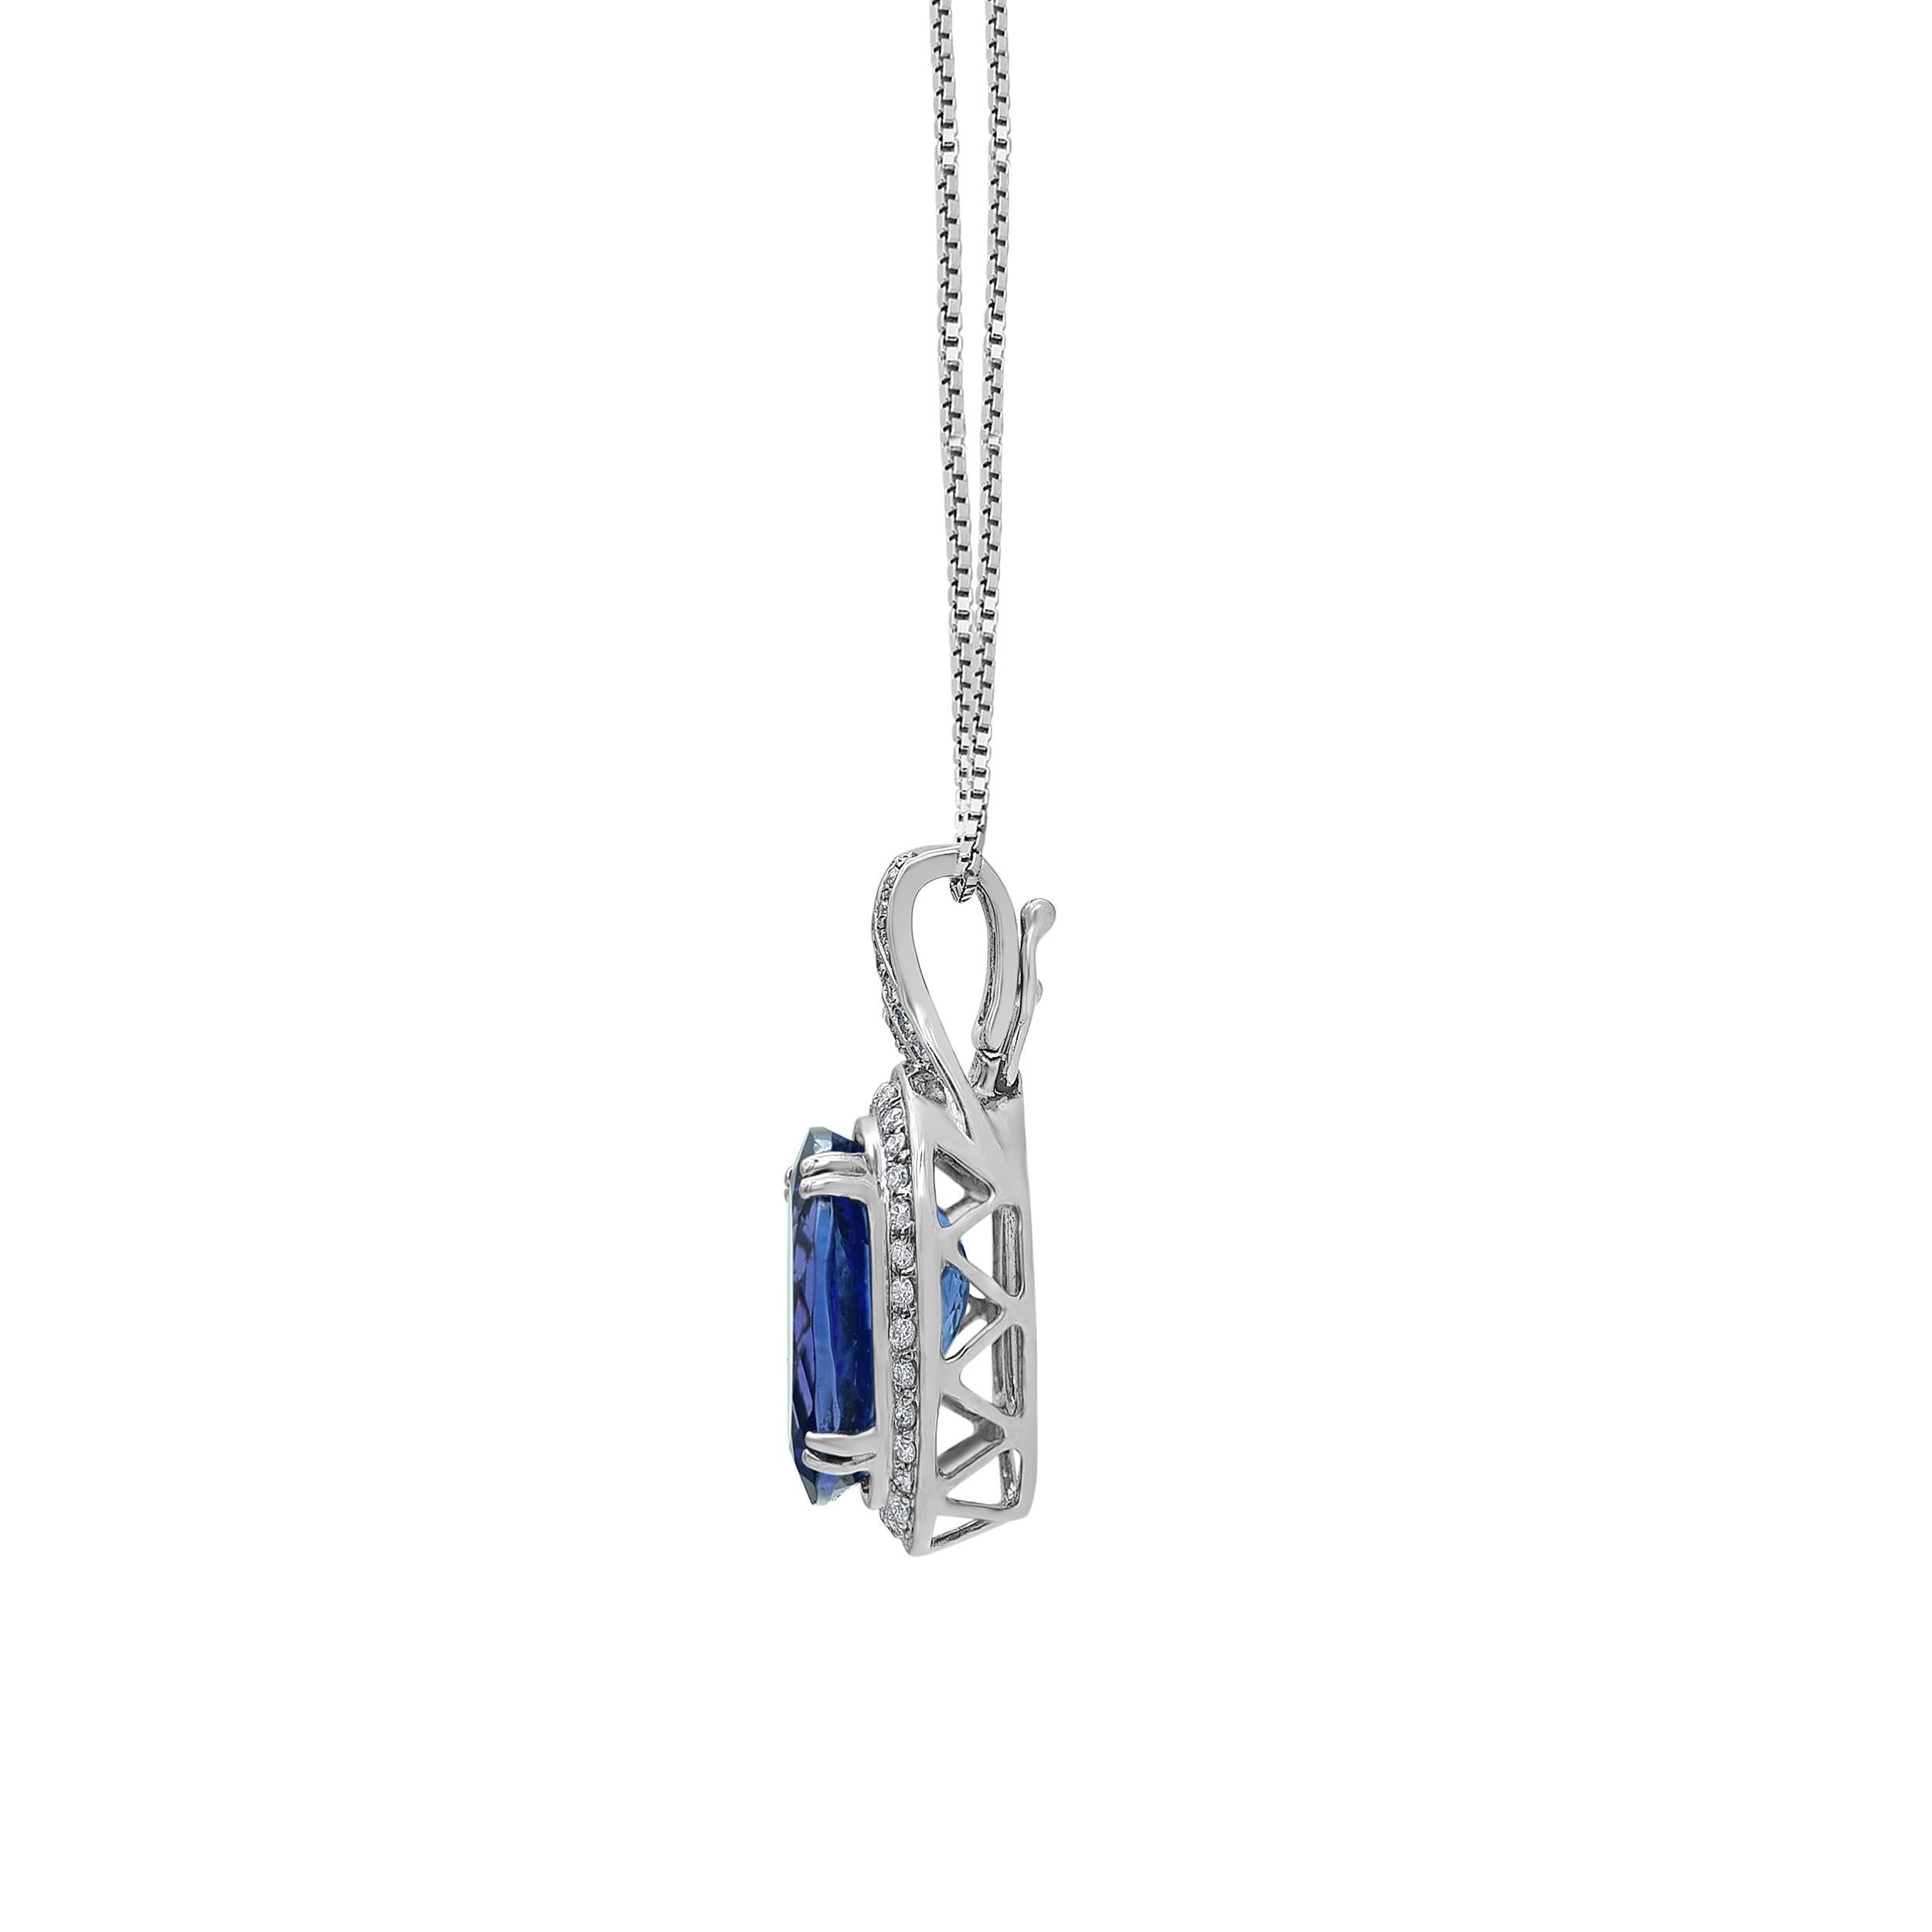 Si envoûtant, ce pendentif en pierres précieuses et en diamants fait sensation. Réalisé en or blanc 14 carats, ce modèle étonnant présente une tanzanite bleu-violet de forme ovale entourée d'un cadre de diamants étincelants. Des diamants